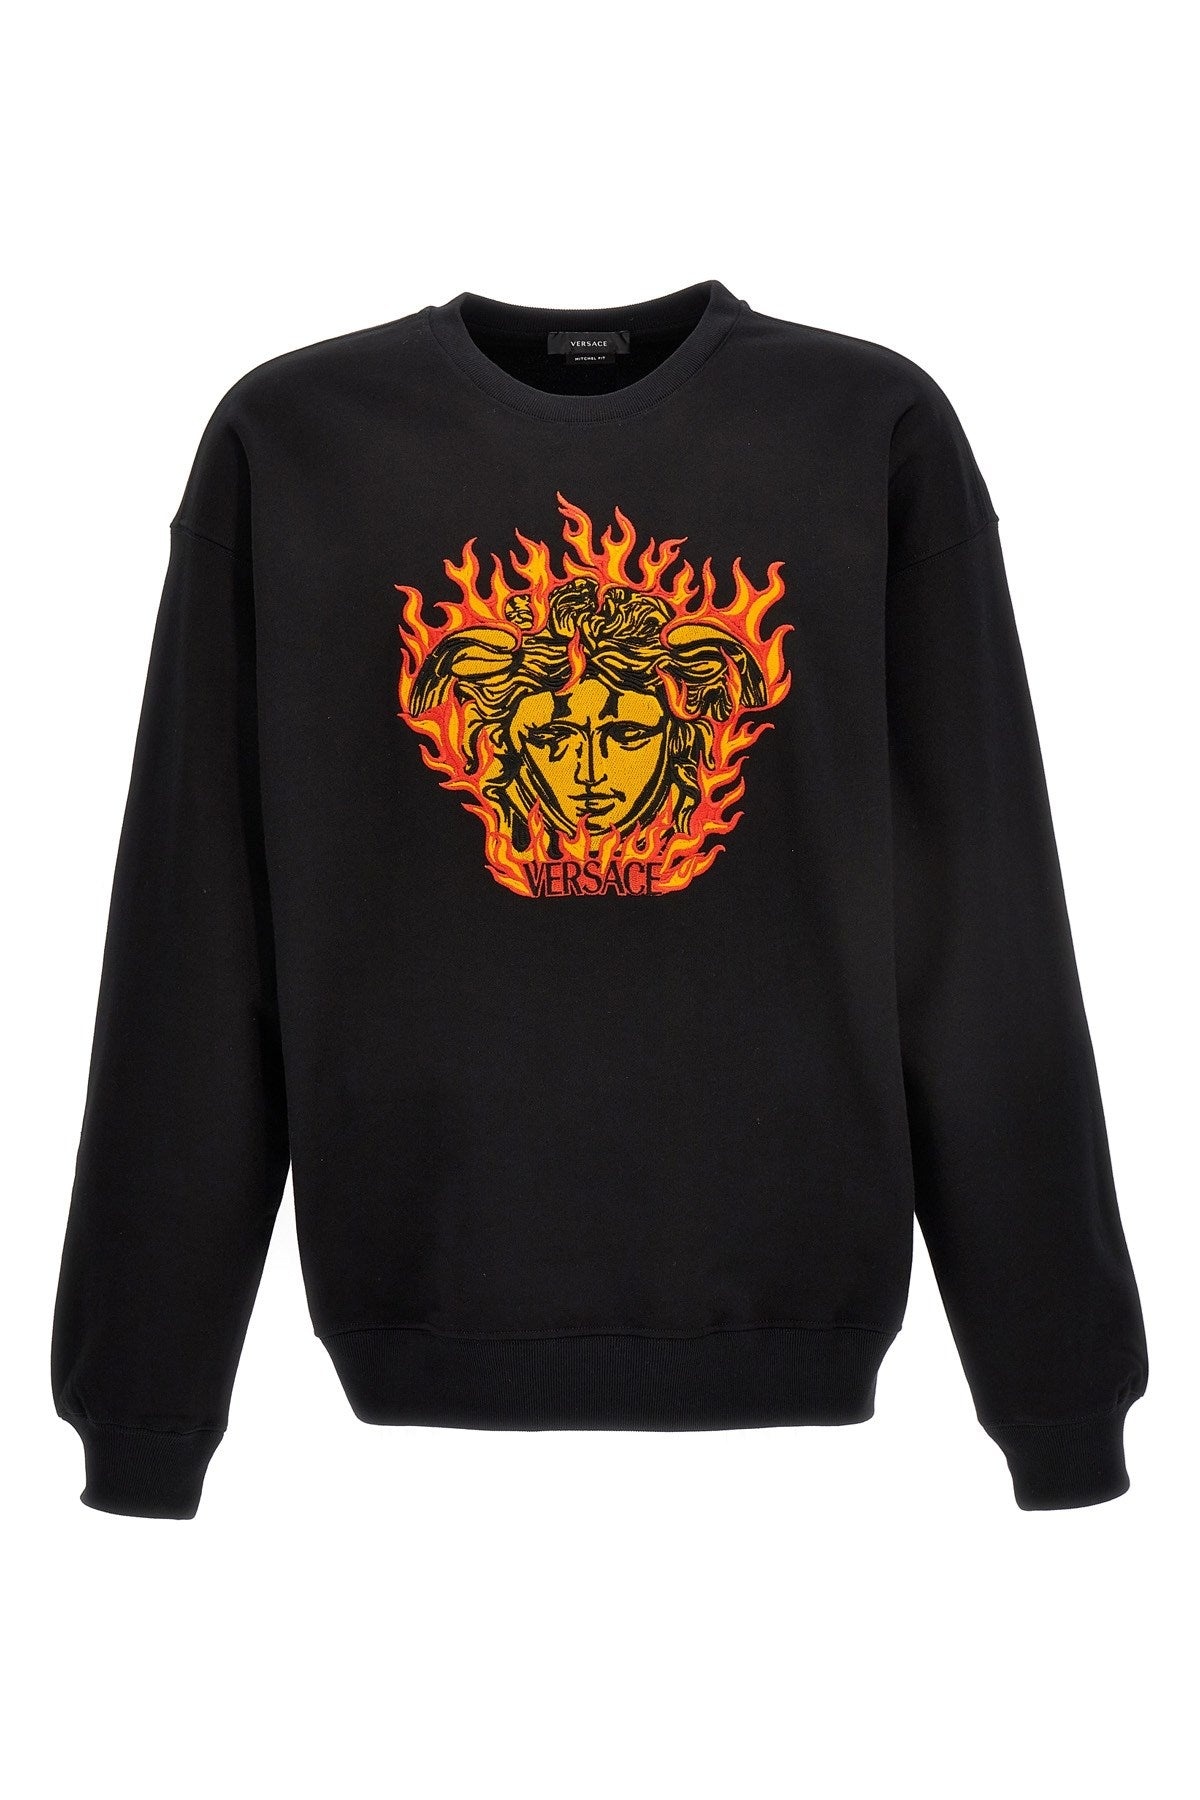 Versace Men 'Medusa Flame' Sweatshirt - 1